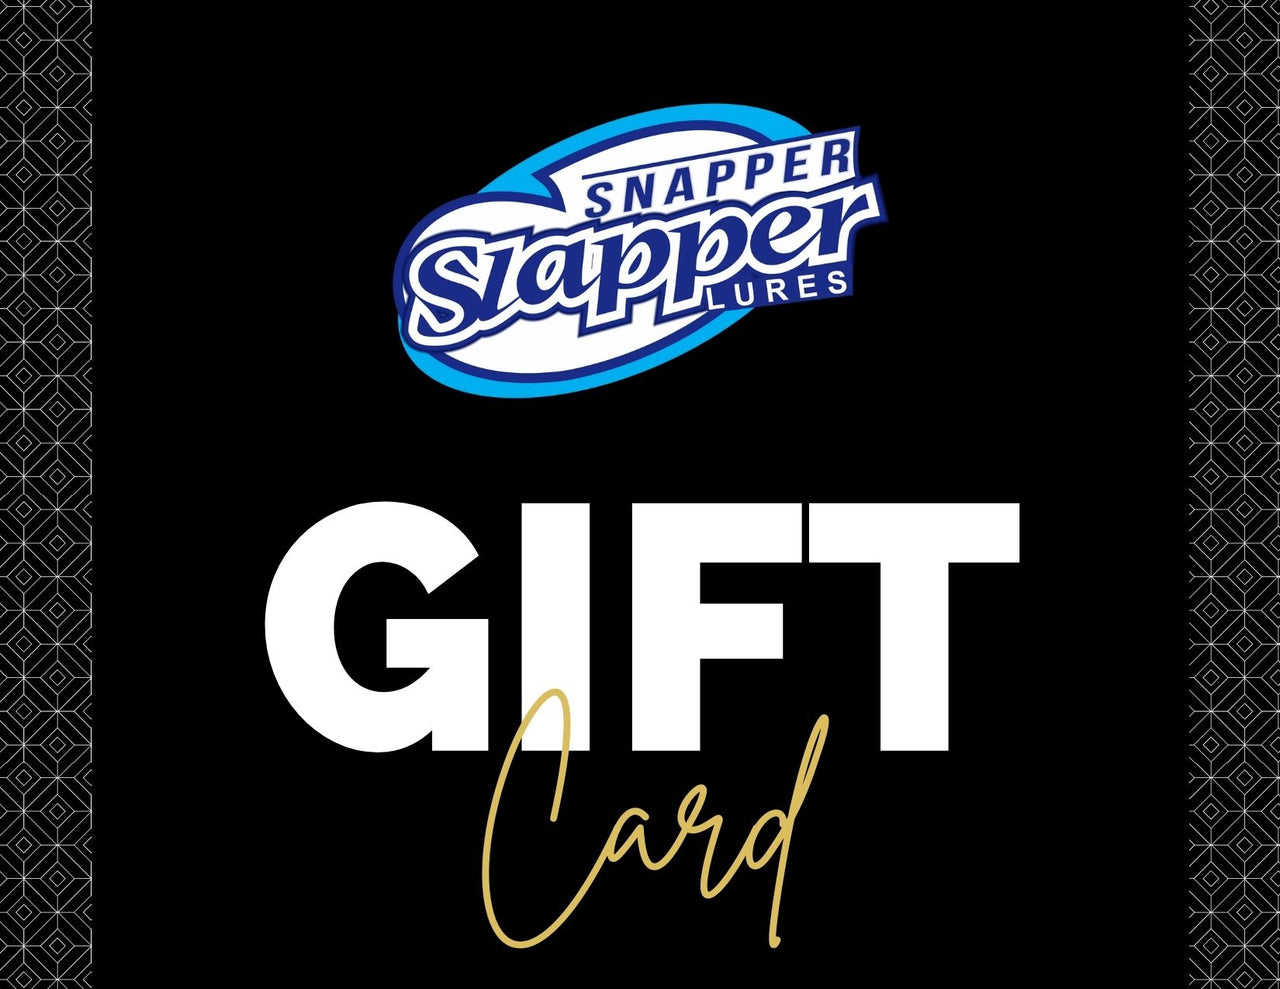 Snapper Slapper Gift Cards – Snapper Slapper Lures